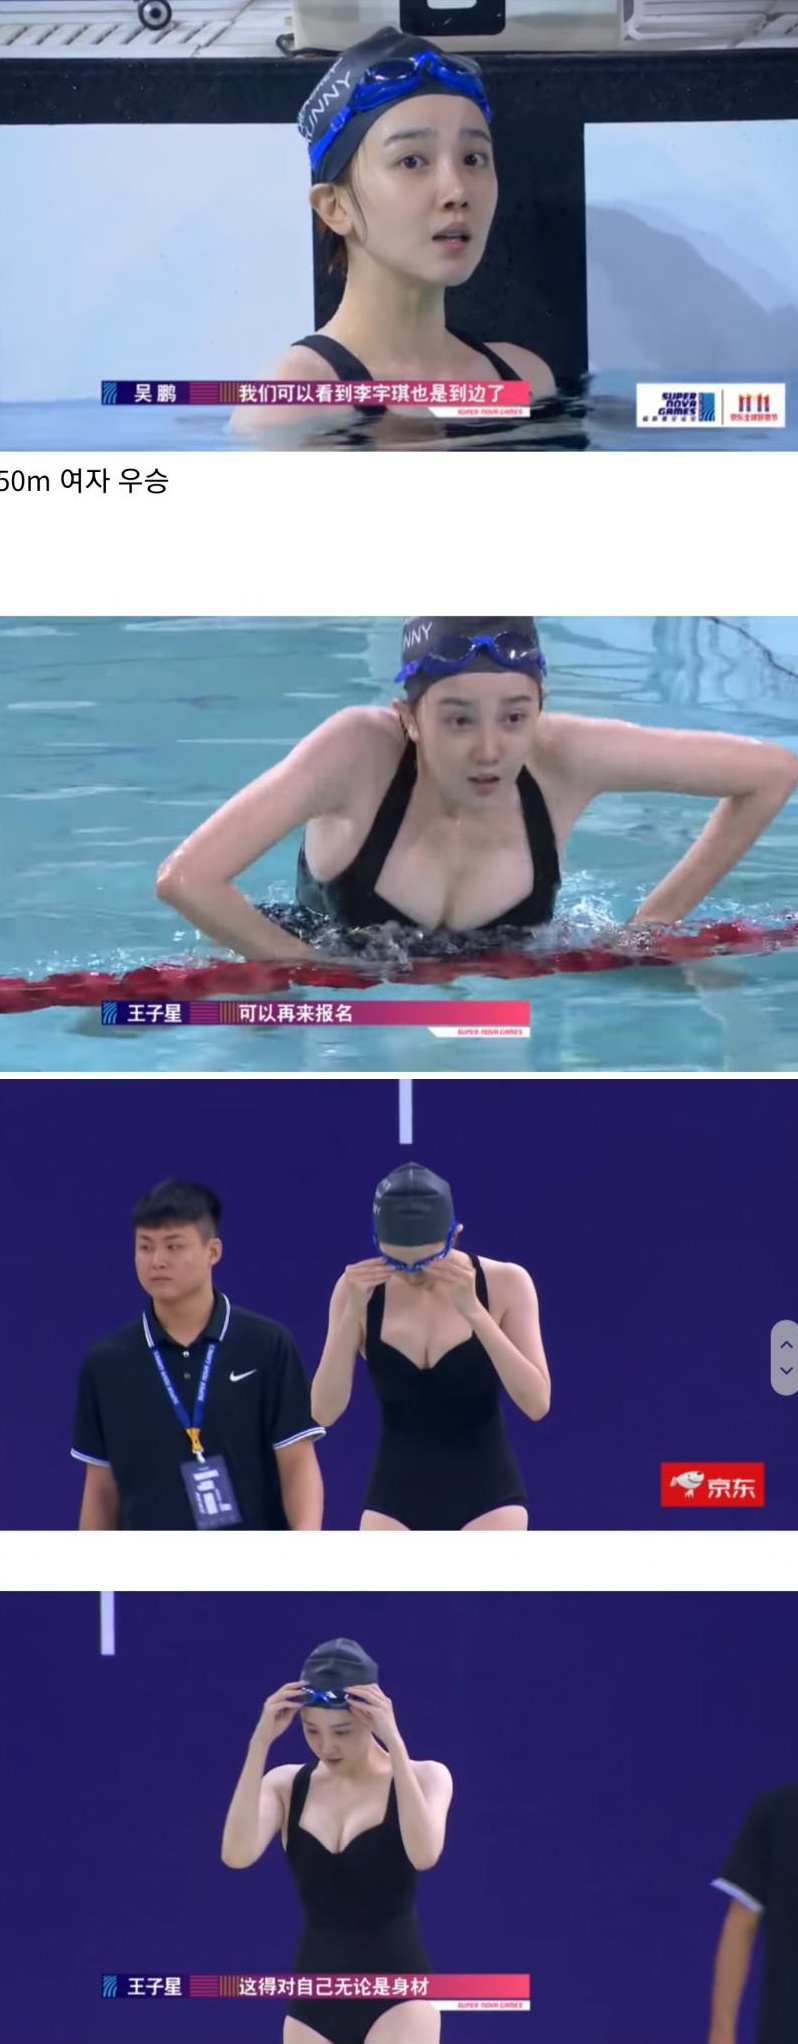 중국 50m 여자 수영 선수